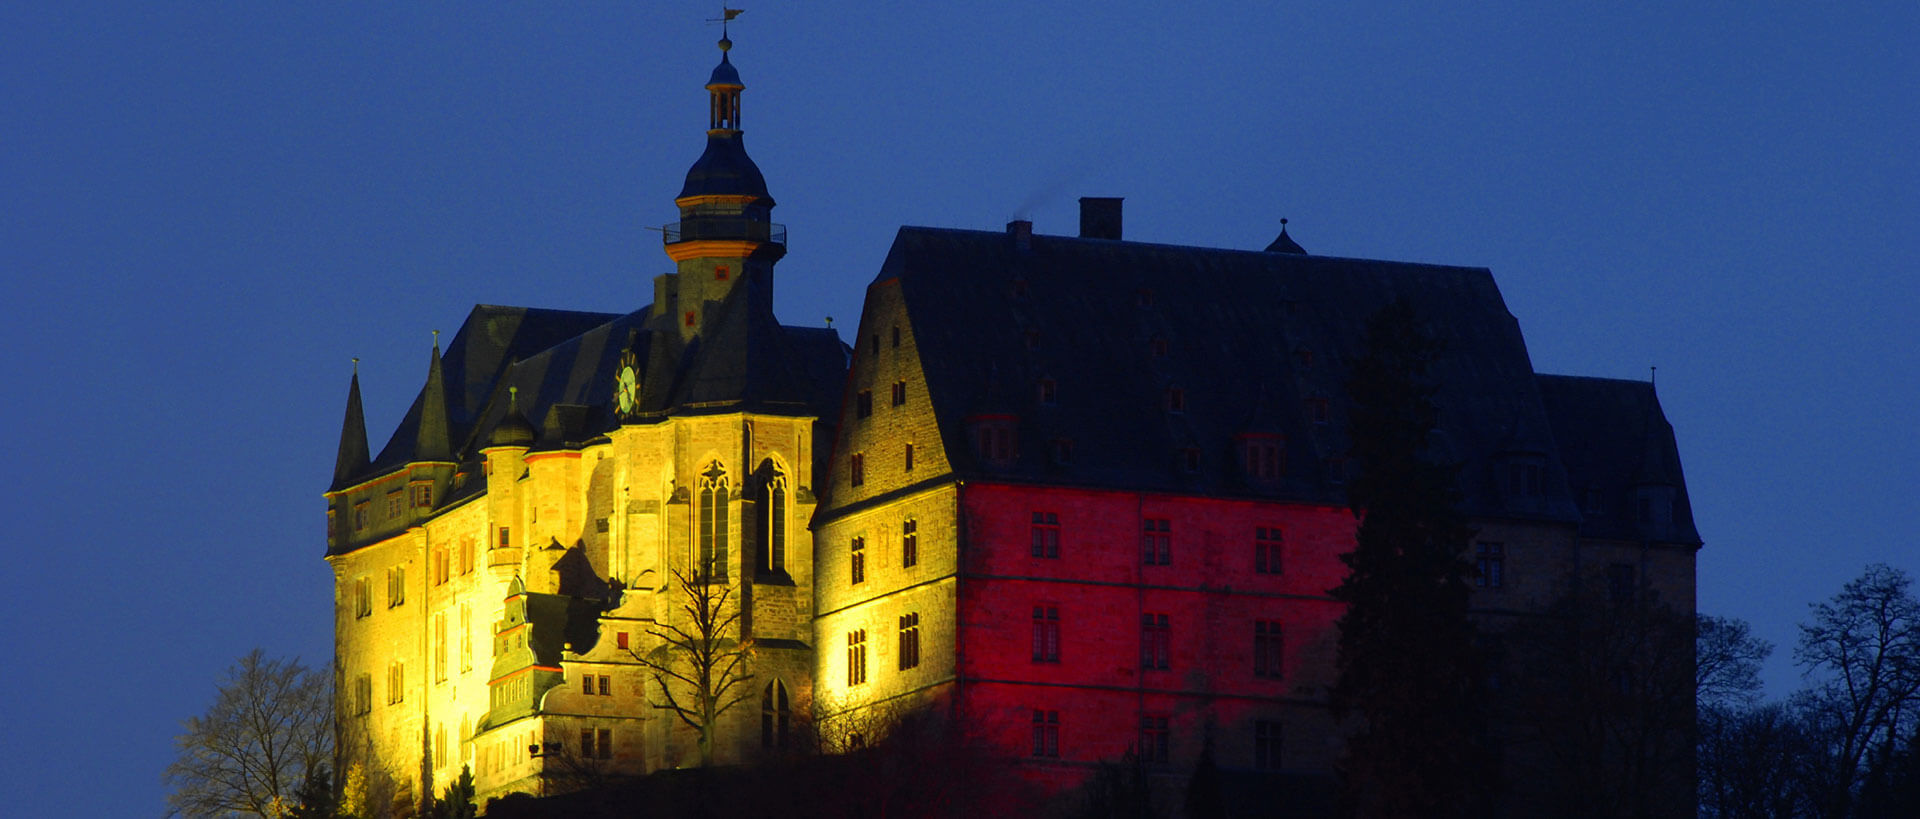 Blick auf das Landgrafenschloss bei Nacht, Credit Georg Kronenberg